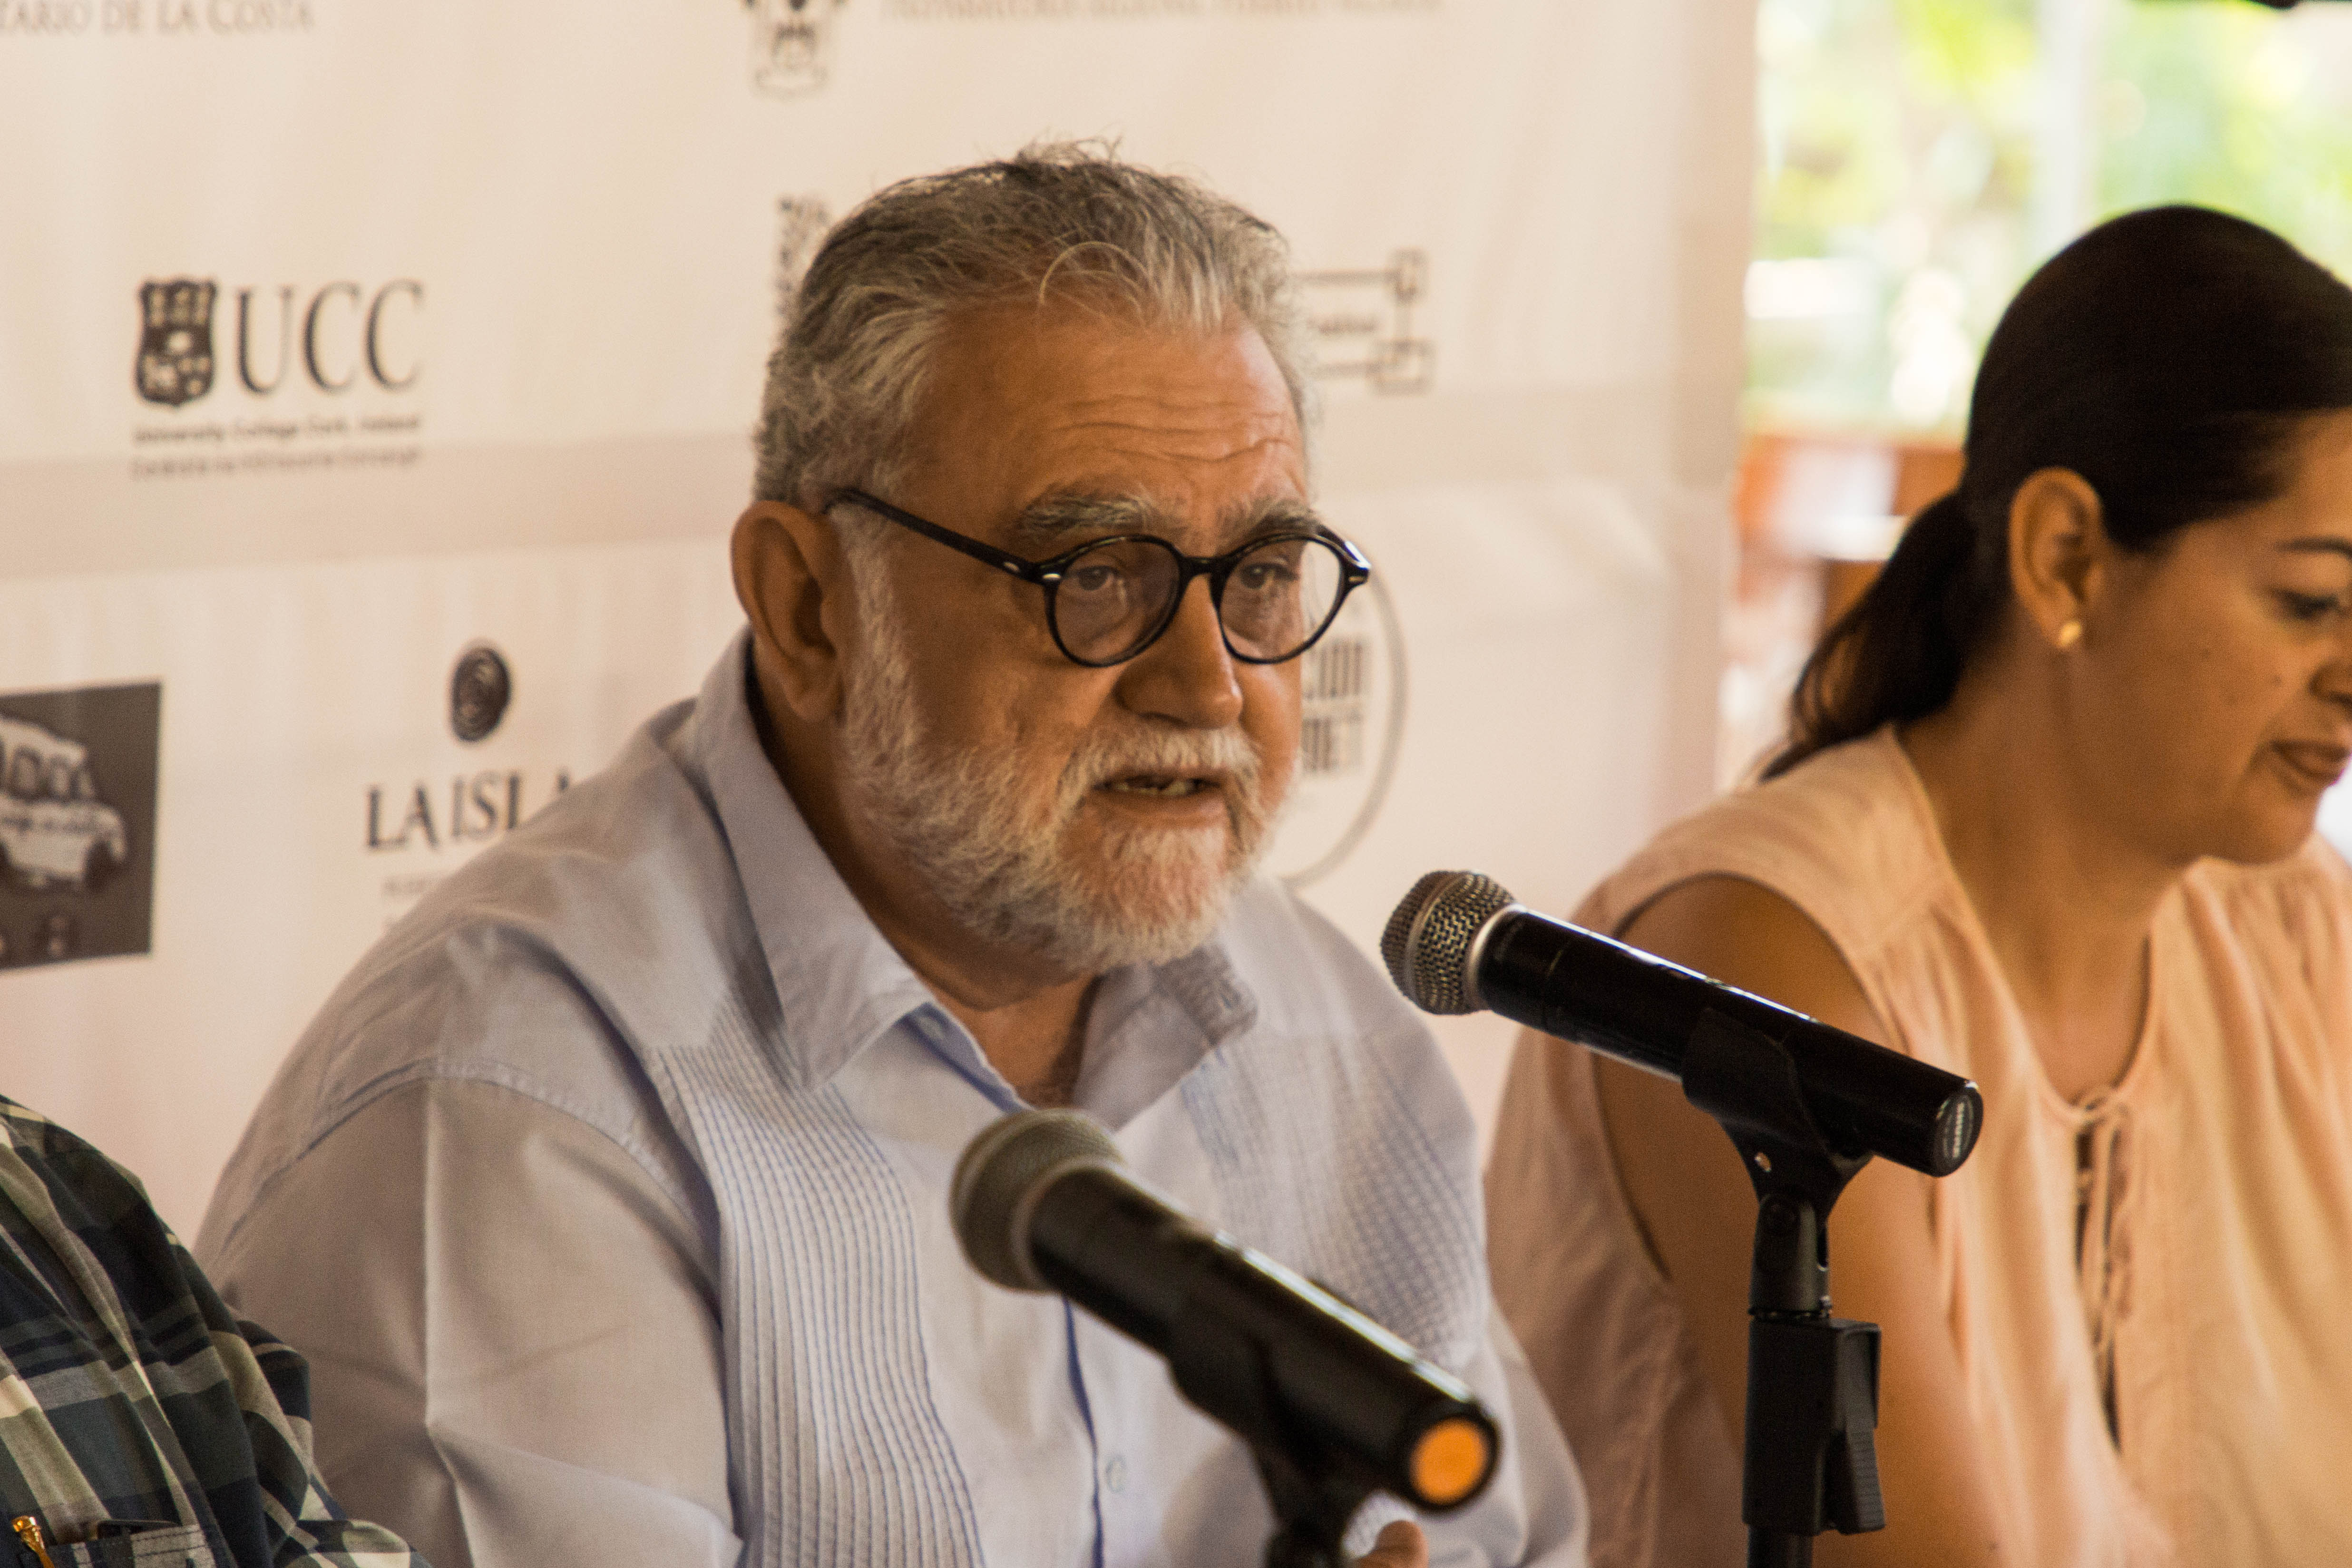 Biol. Iván Trujillo Bolio, director del Festival Internacional de Cine en Guadalajara